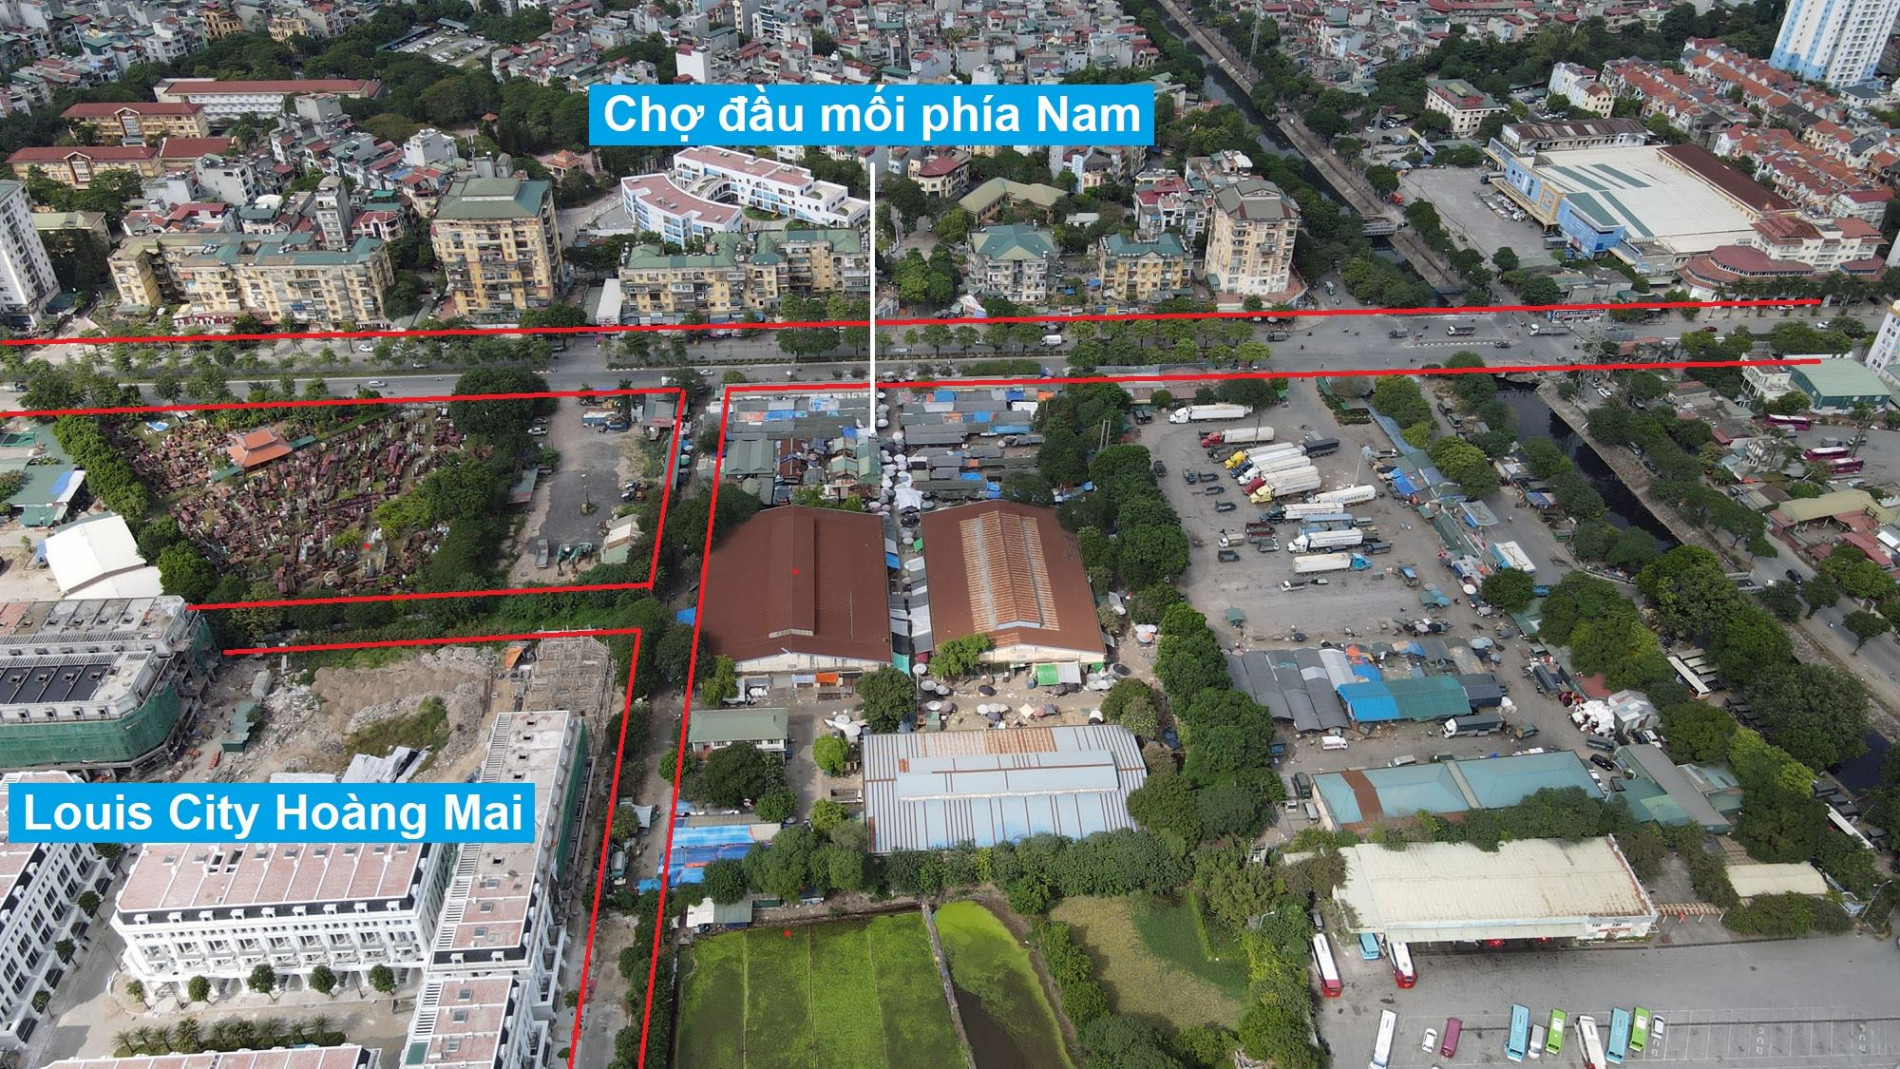 Đường sẽ mở theo quy hoạch ở phường Hoàng Văn Thụ, Hoàng Mai, Hà Nội (phần 3)